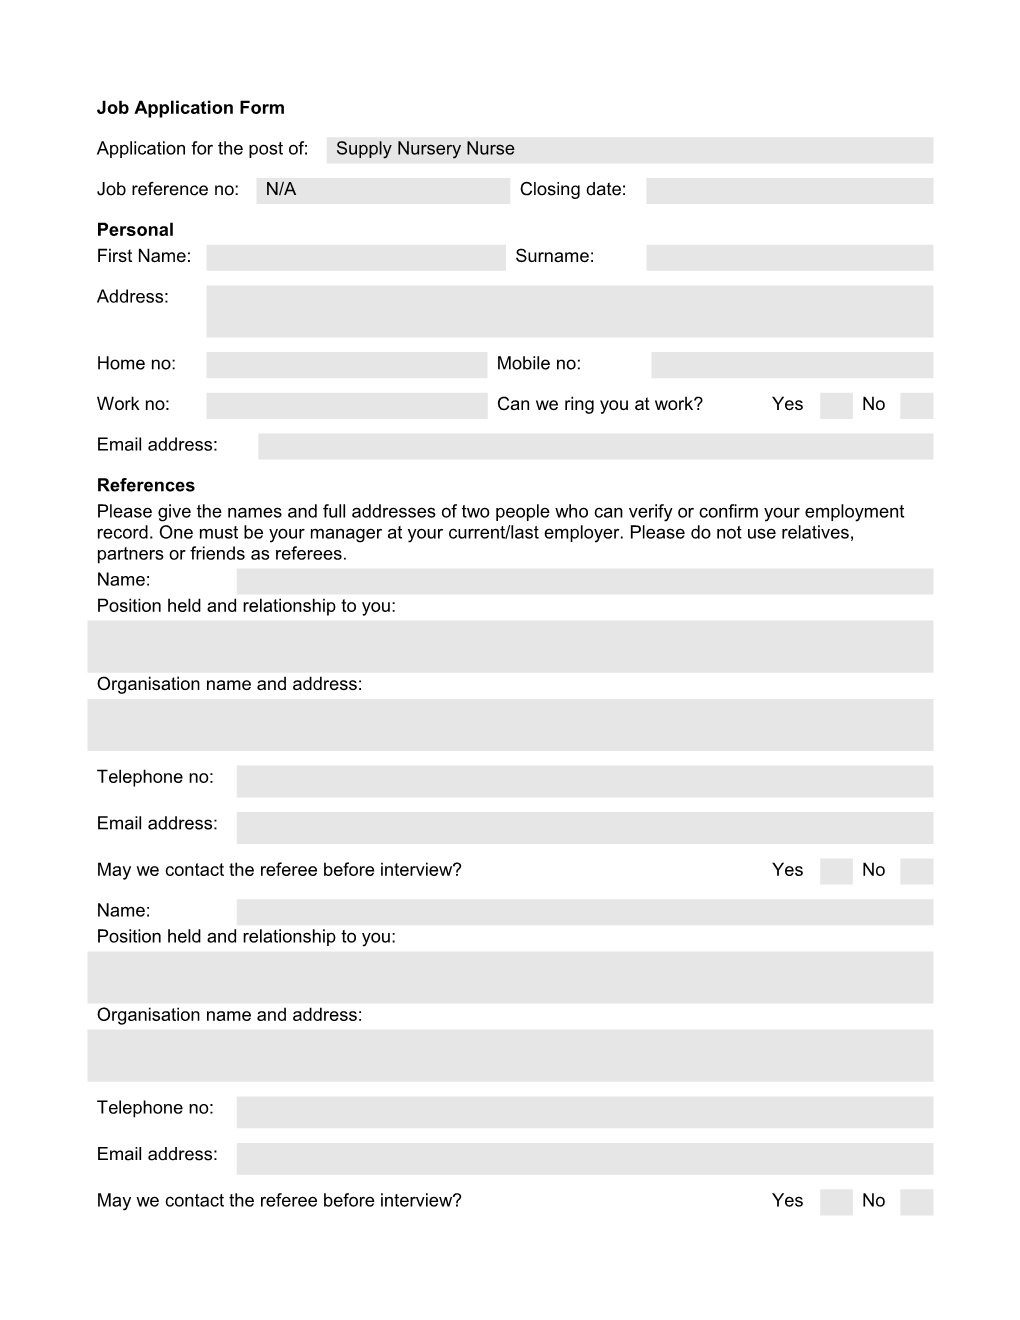 Job Application Form s10